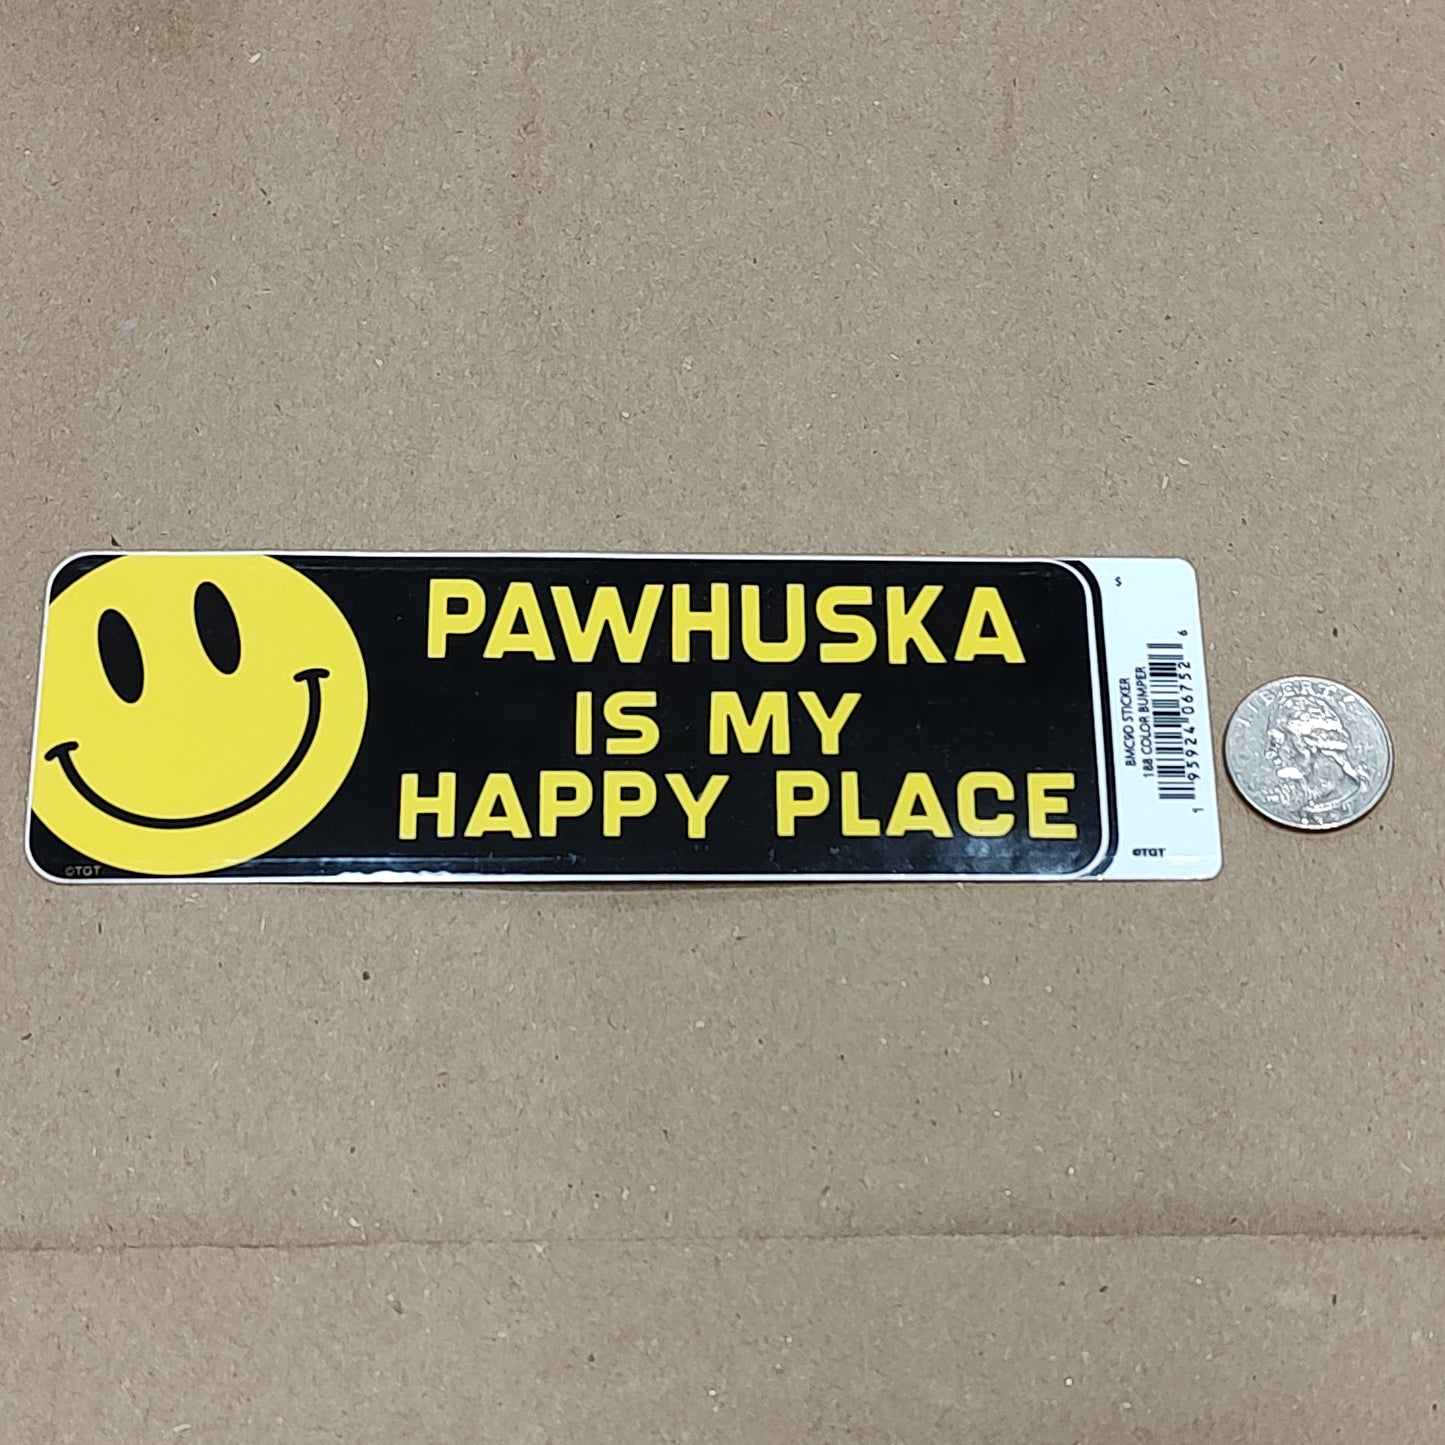 Pawhuska is my happy place - sticker